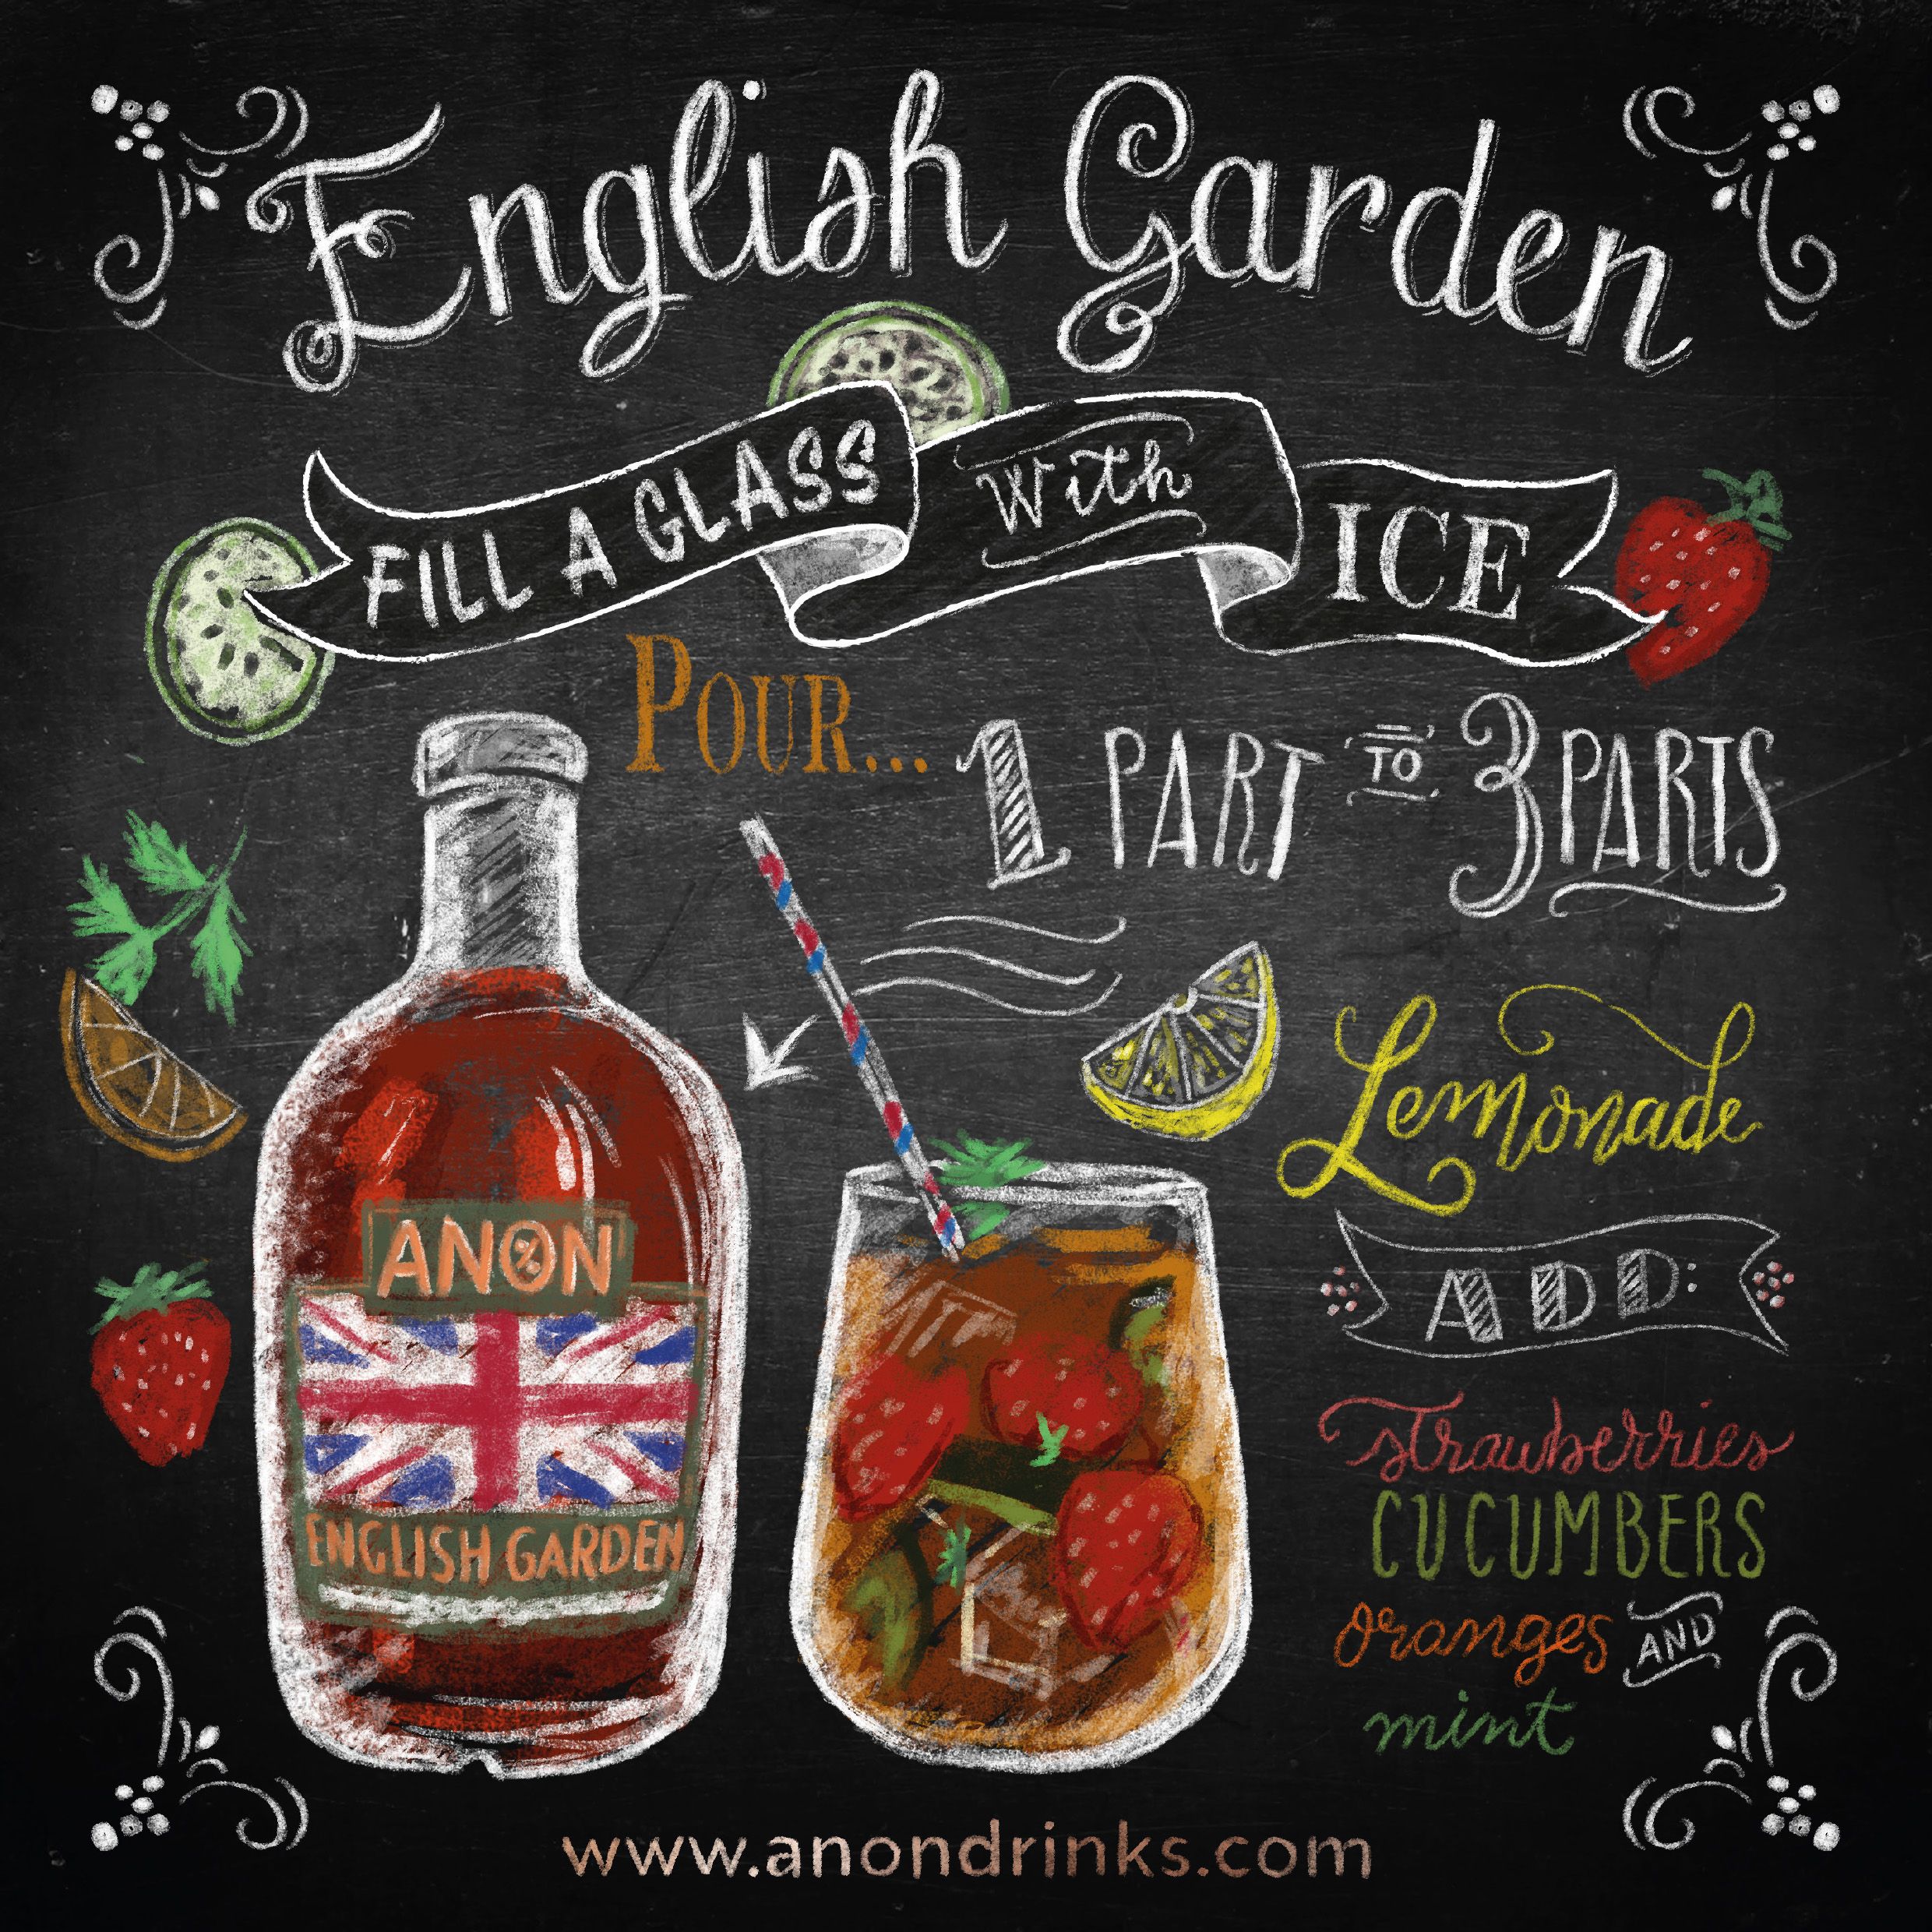 ANON English Garden